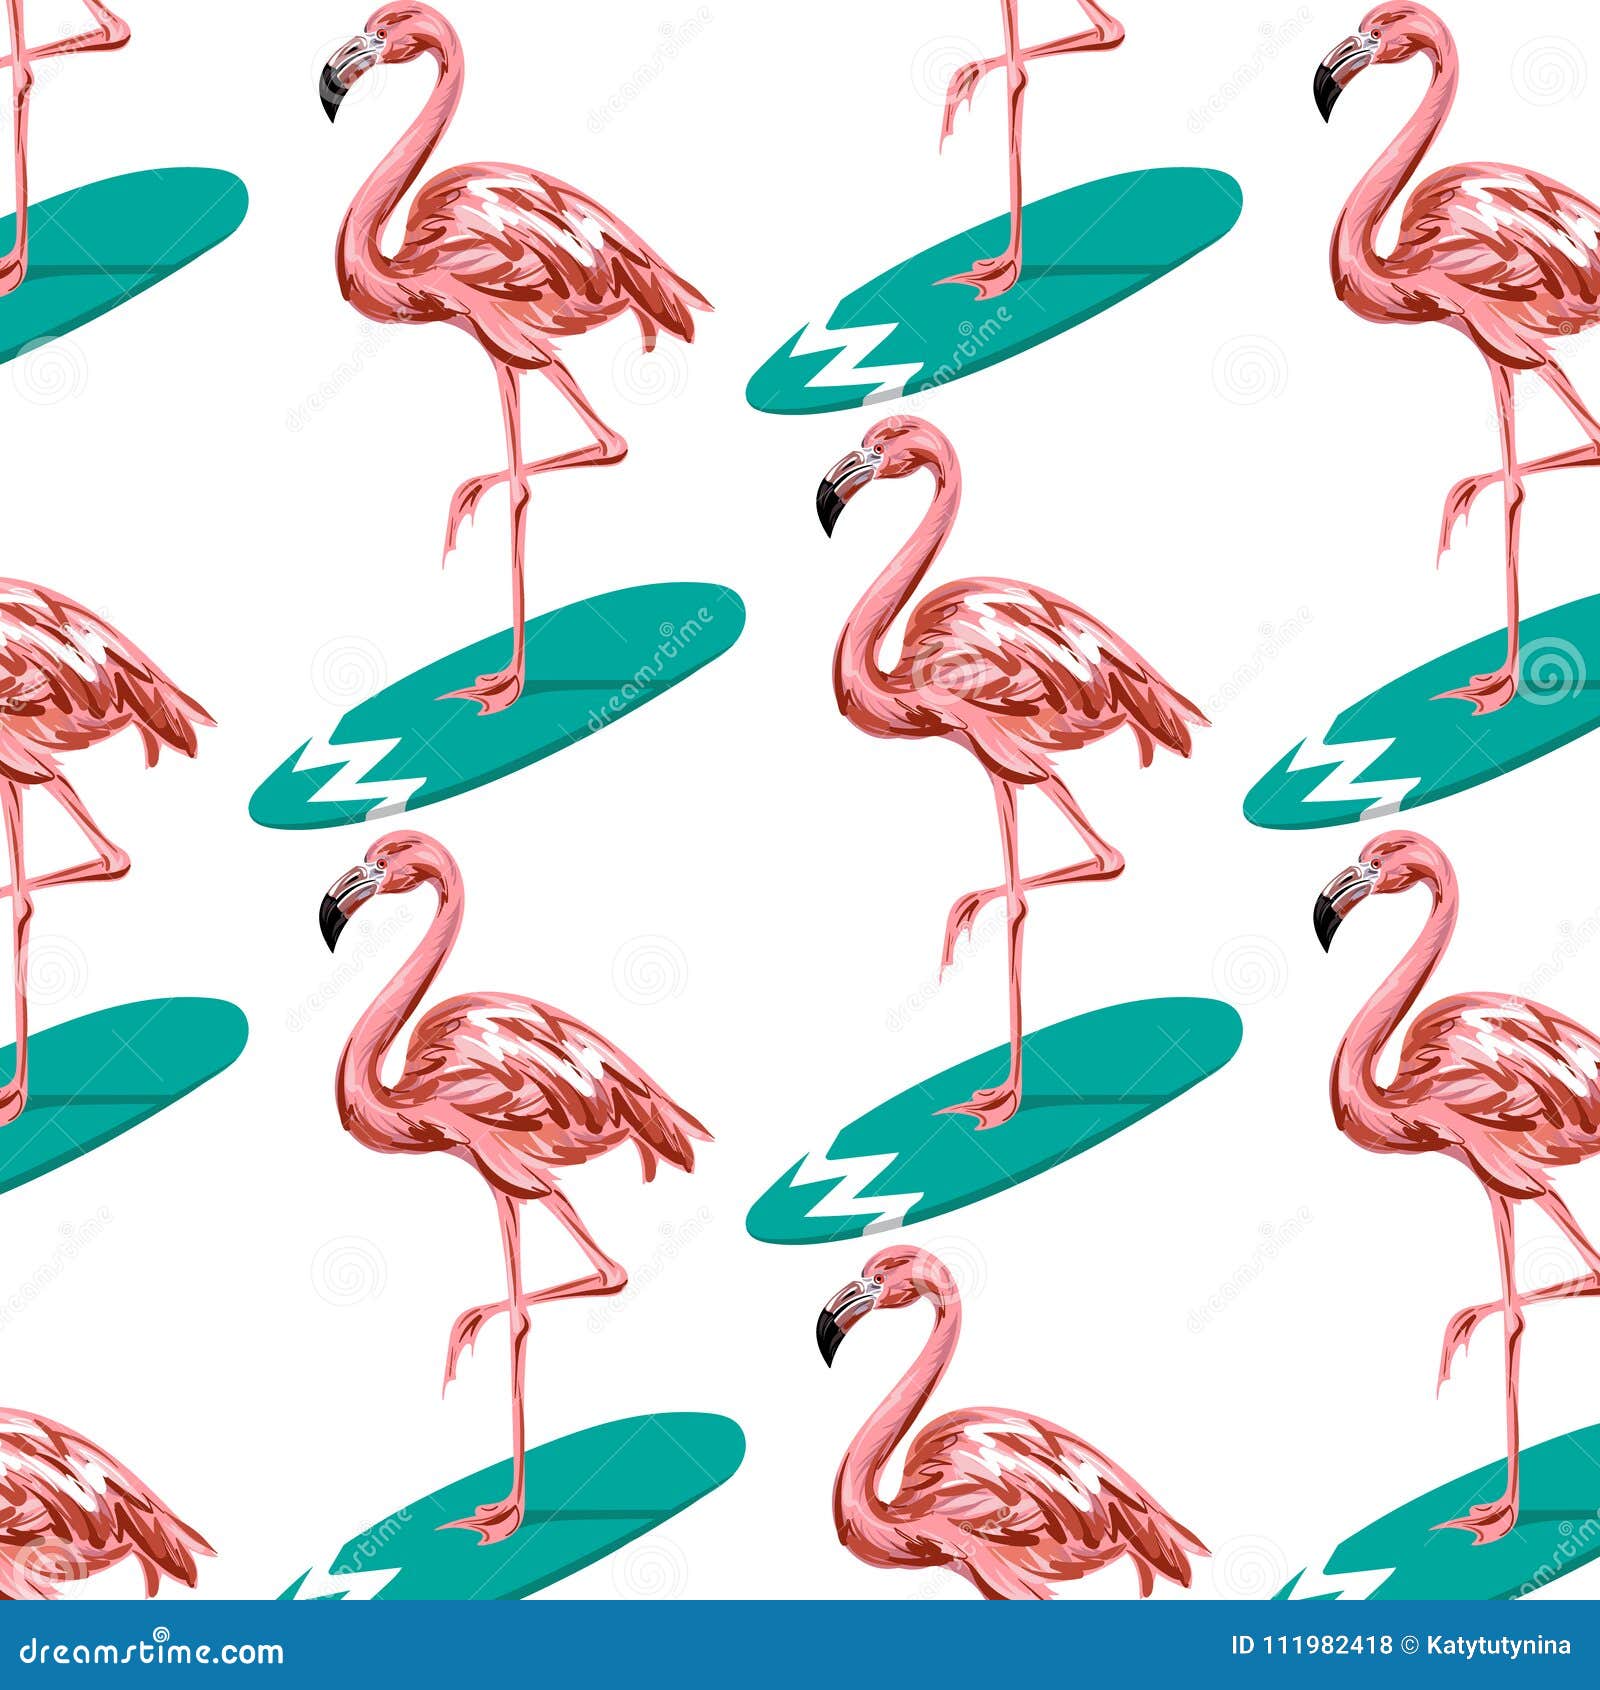 Vector o teste padrão colorido com ilustração tirada mão do flamingo na prancha Molde para o cartão, o cartaz, o cartaz, a bandeira, a cópia para o t-shirt, o pino, o crachá e o remendo